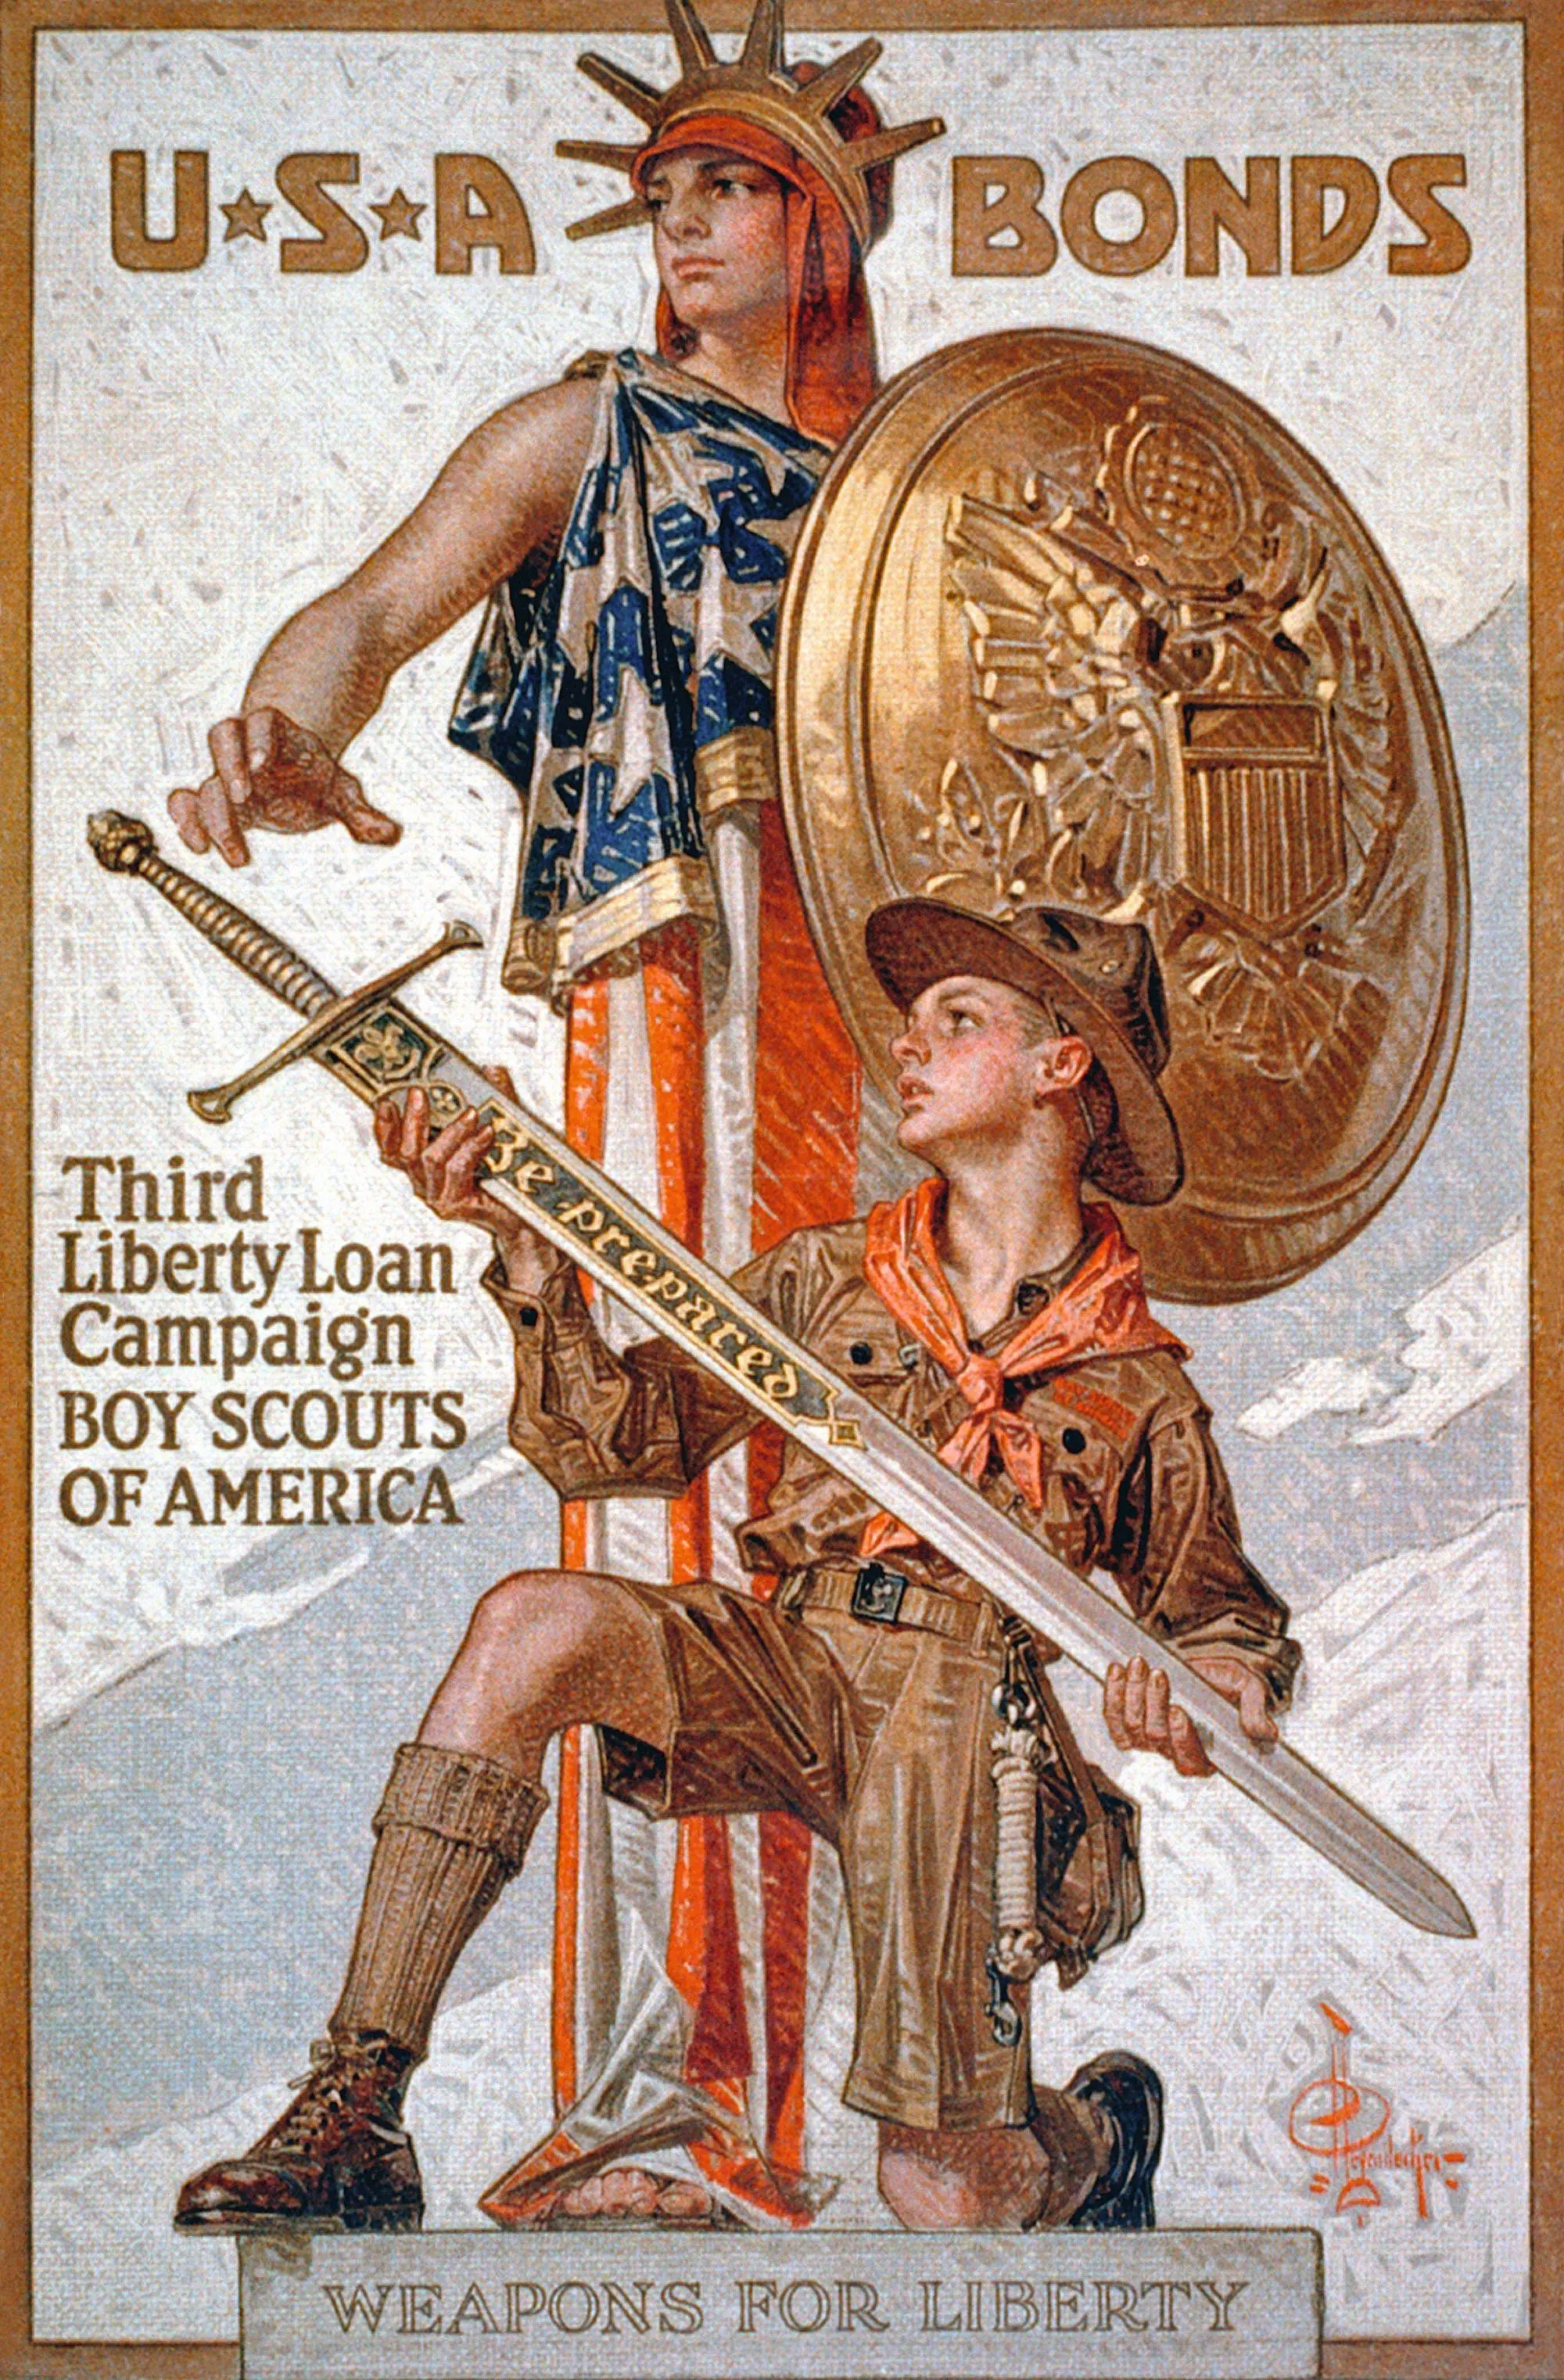 Affi che de propagande américaine, 1917.